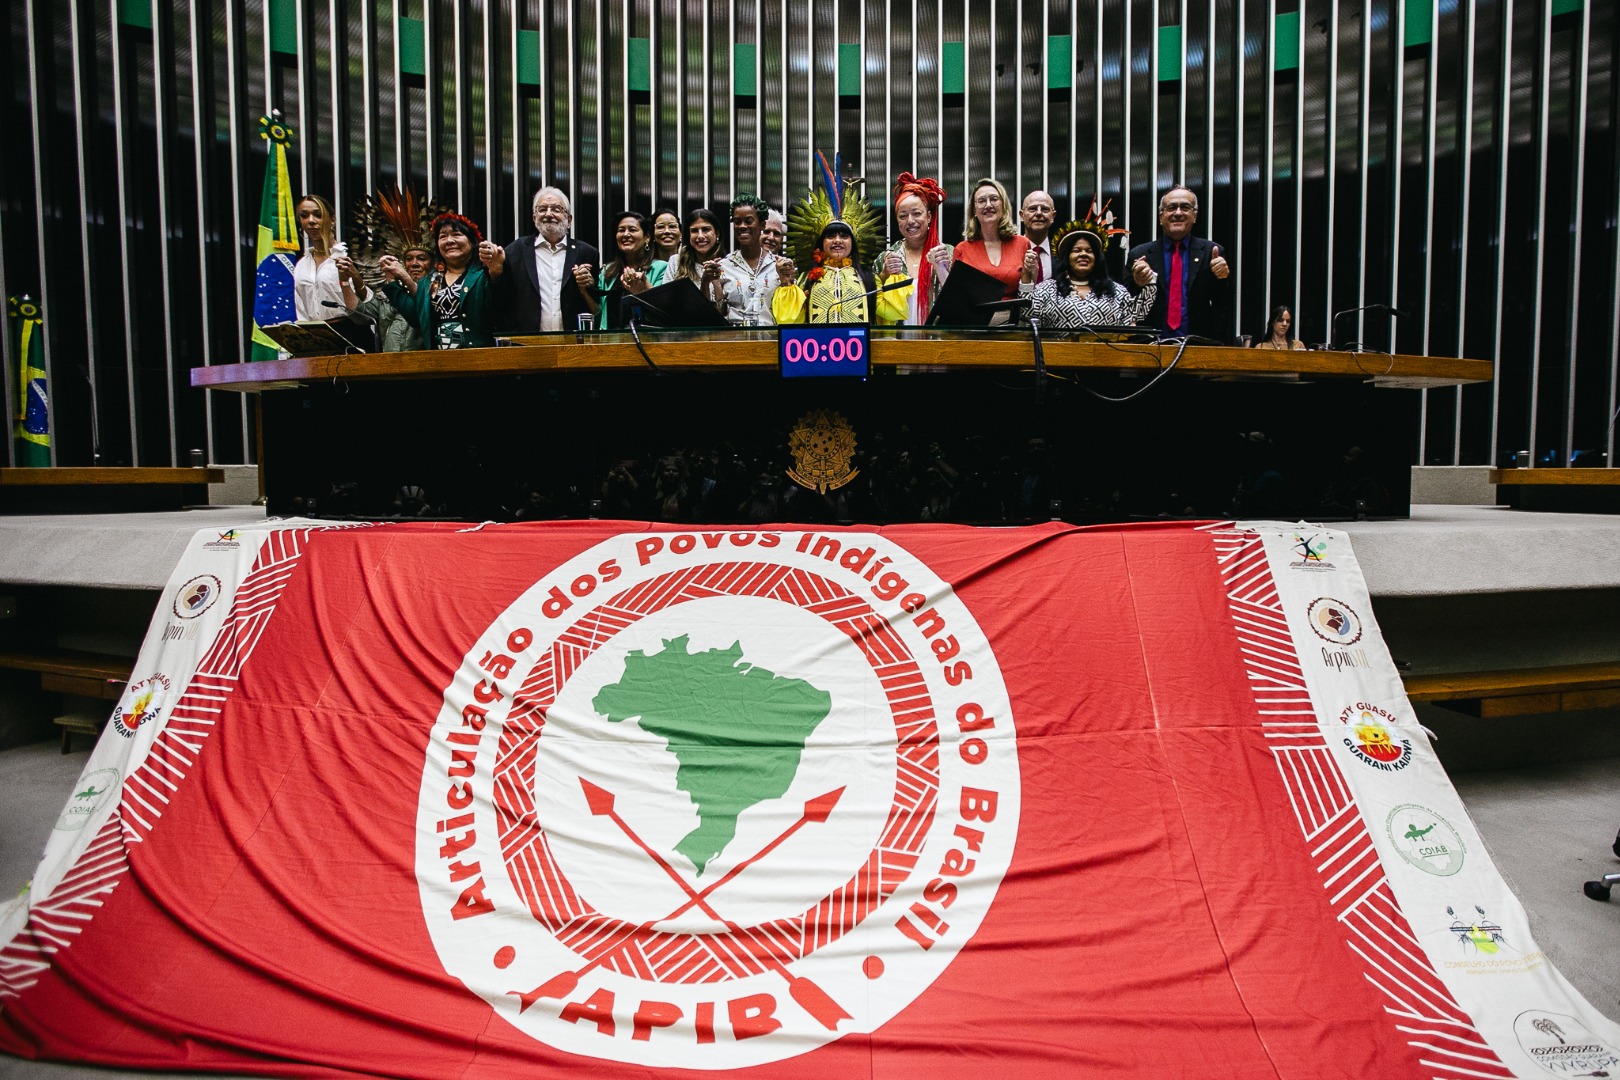 Durante ato de celebração dos 20 anos do Acampamento Terra Livre, centenas de representantes e lideranças transformaram o Plenário da Câmara dos Deputados em assembleia indígena